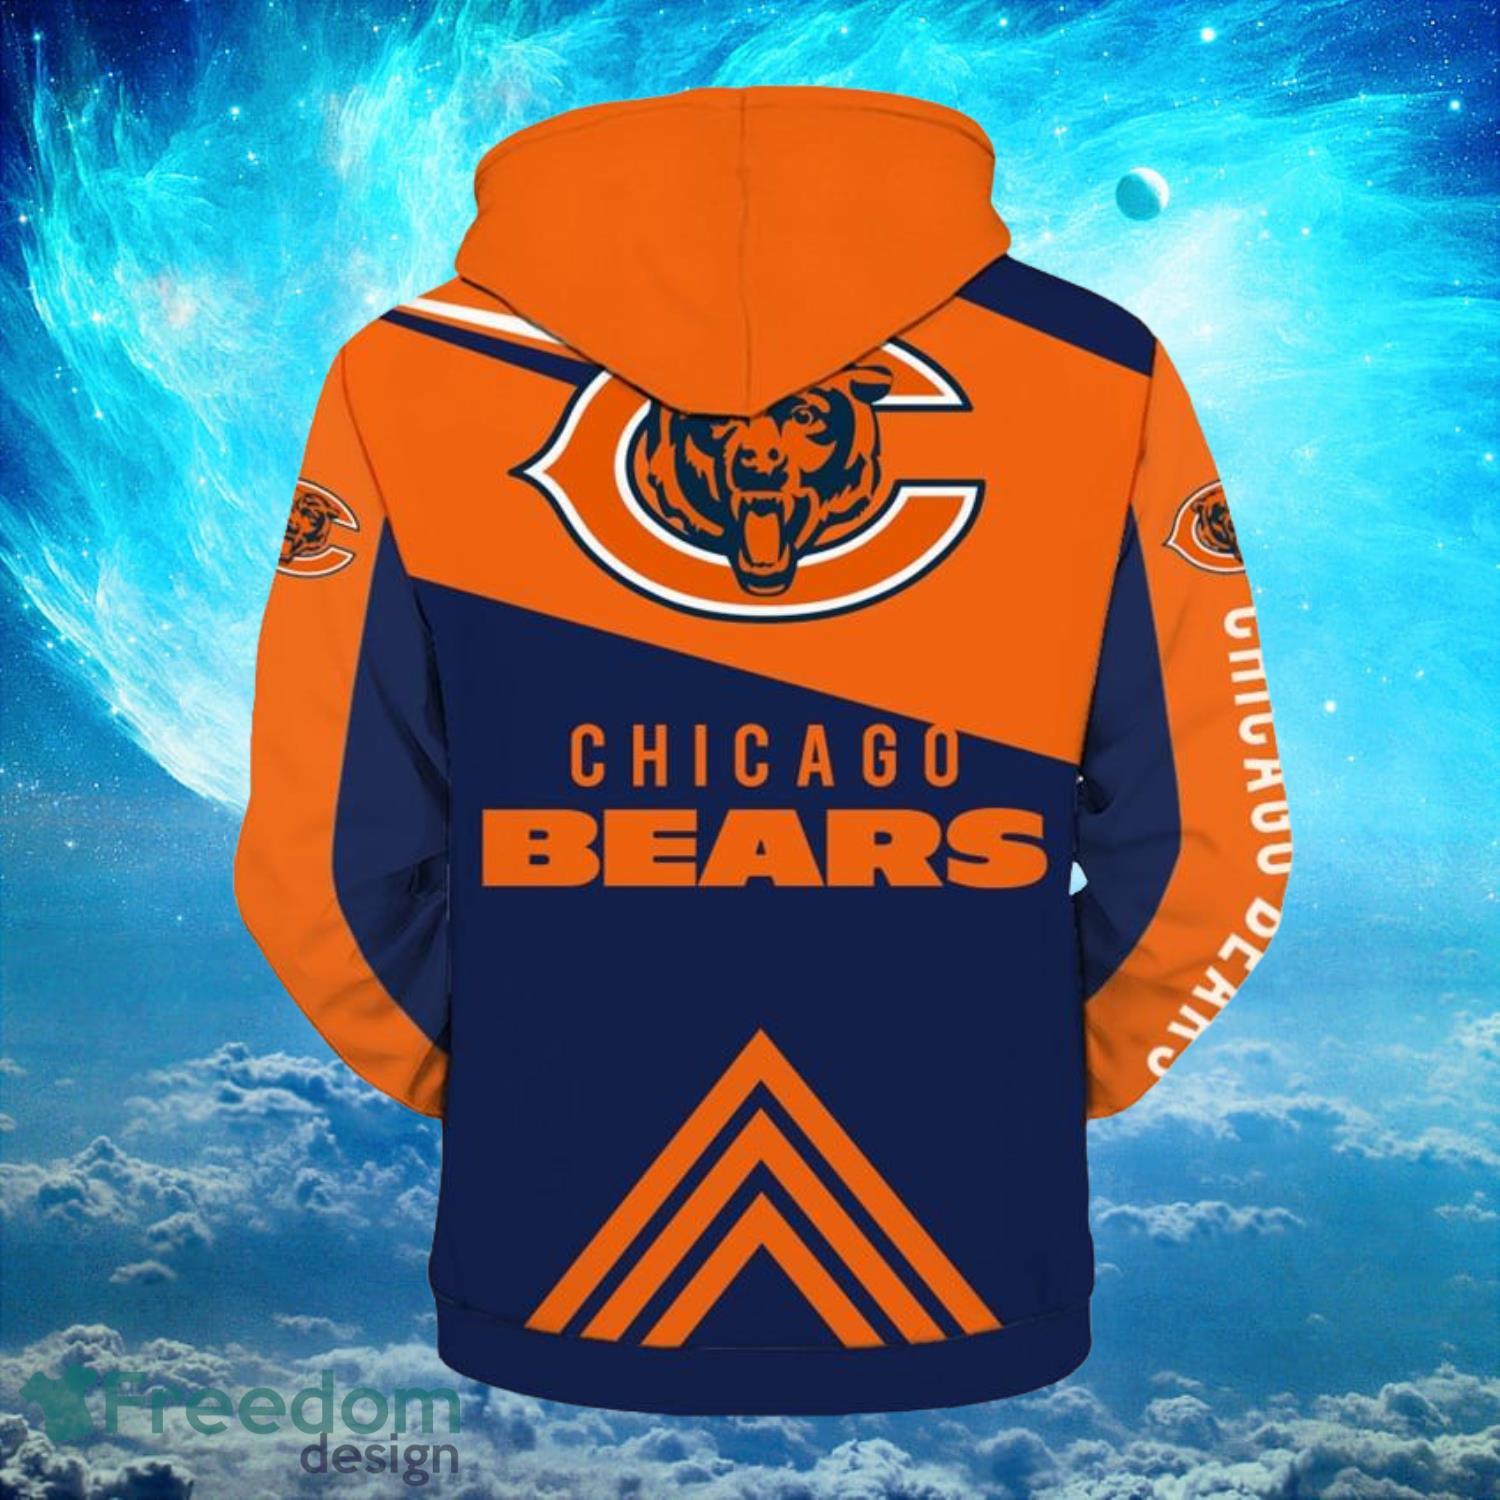 Chicago Bears Logo NFL Football Zipper Hoodies Full Over Print